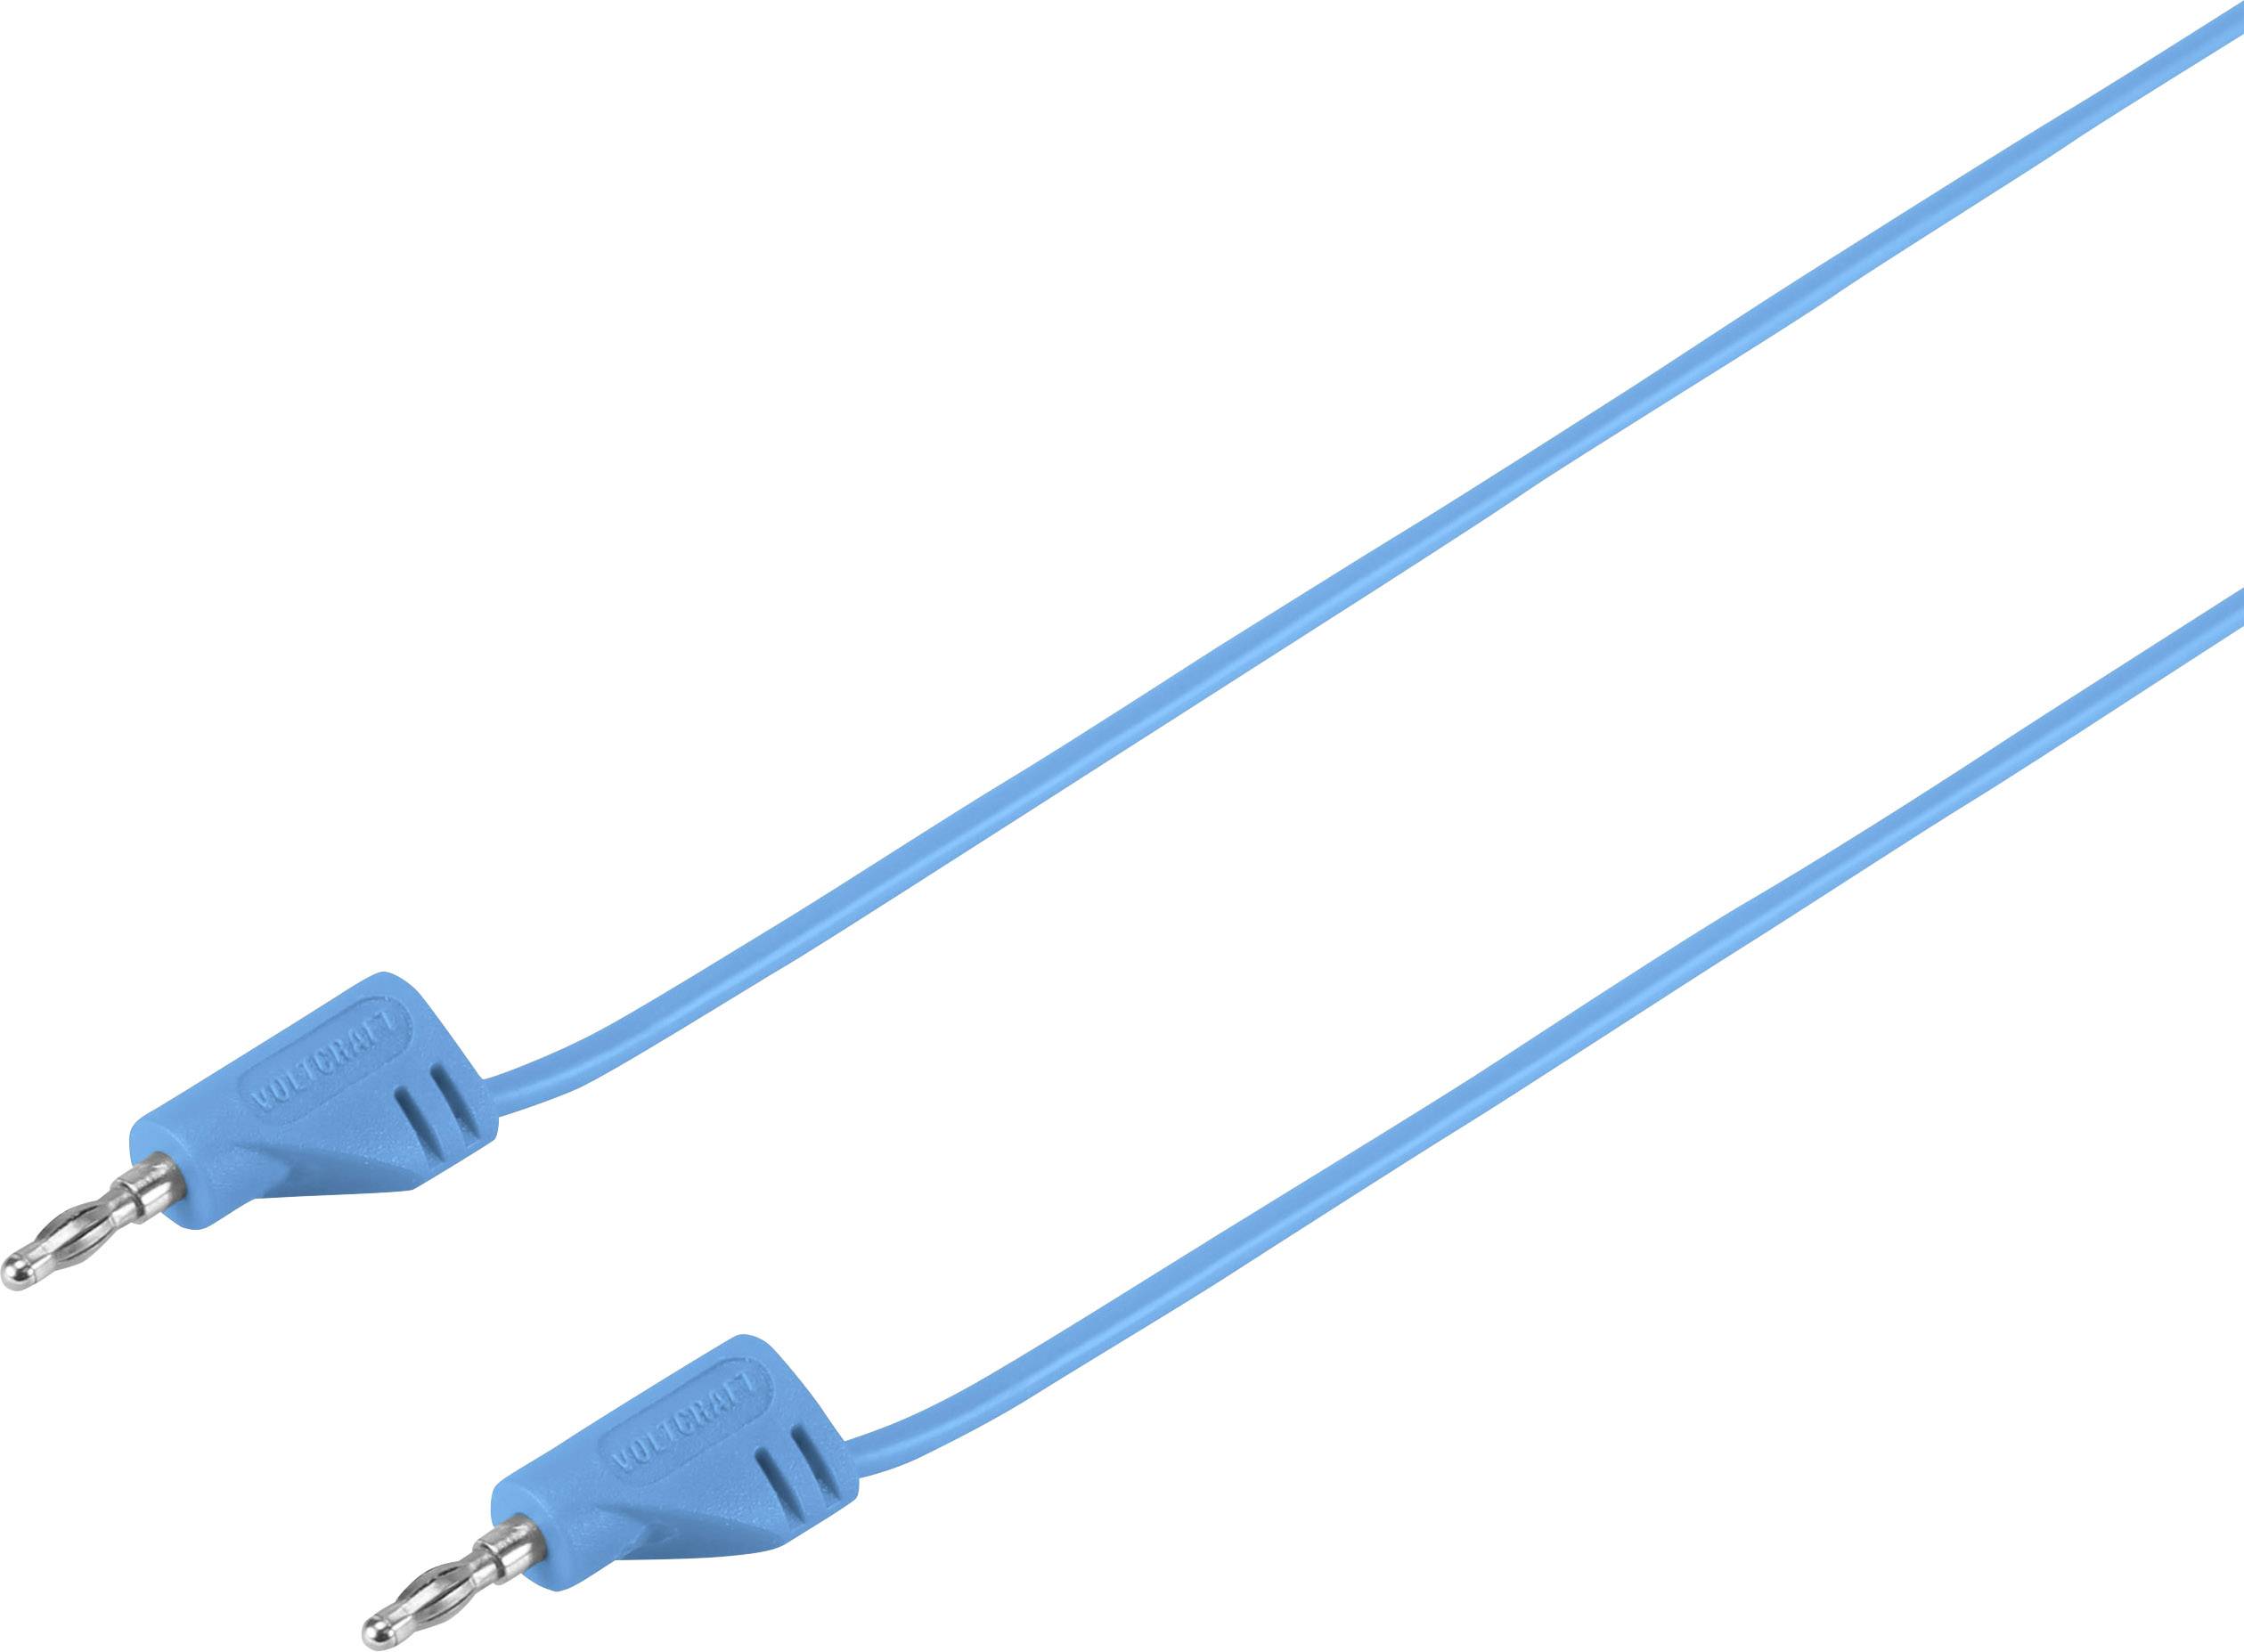 VOLTCRAFT Hochflexible Messleitung [Lamellenstecker 2 mm - Lamellenstecker 2 mm] 0.3 m Blau MSB-200